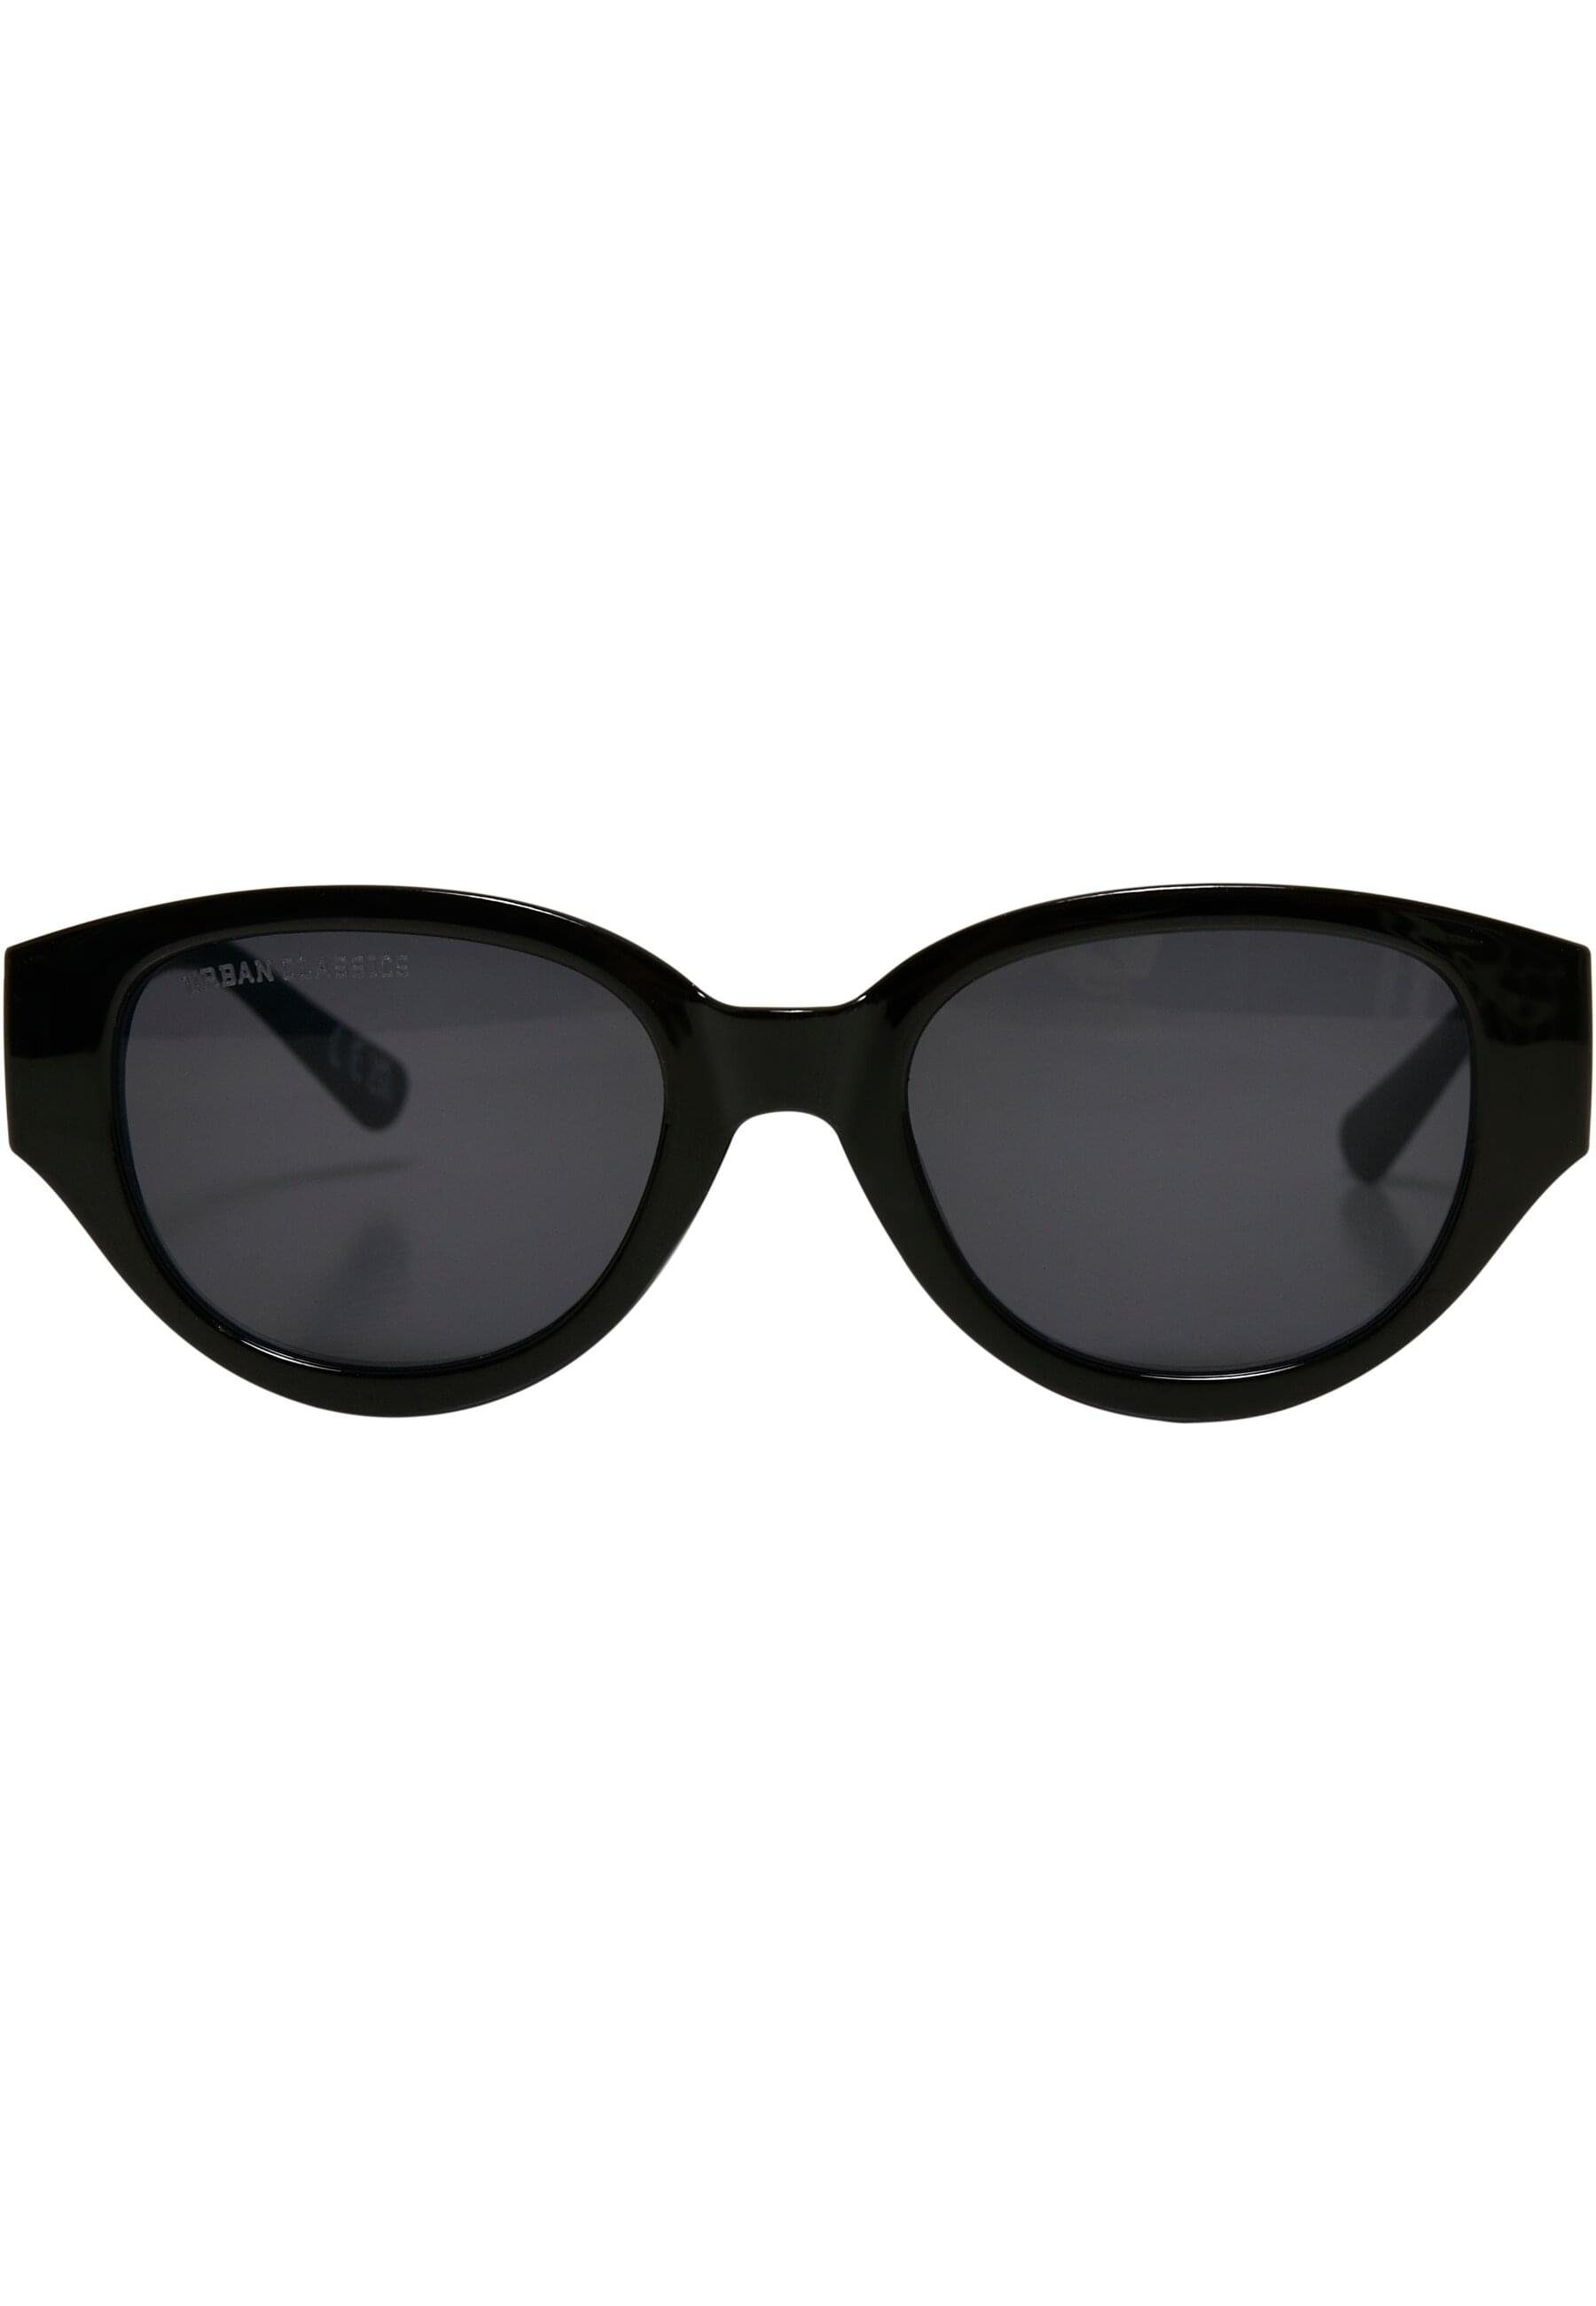 Sunglasses URBAN CLASSICS Cruz Unisex Sonnenbrille Santa black